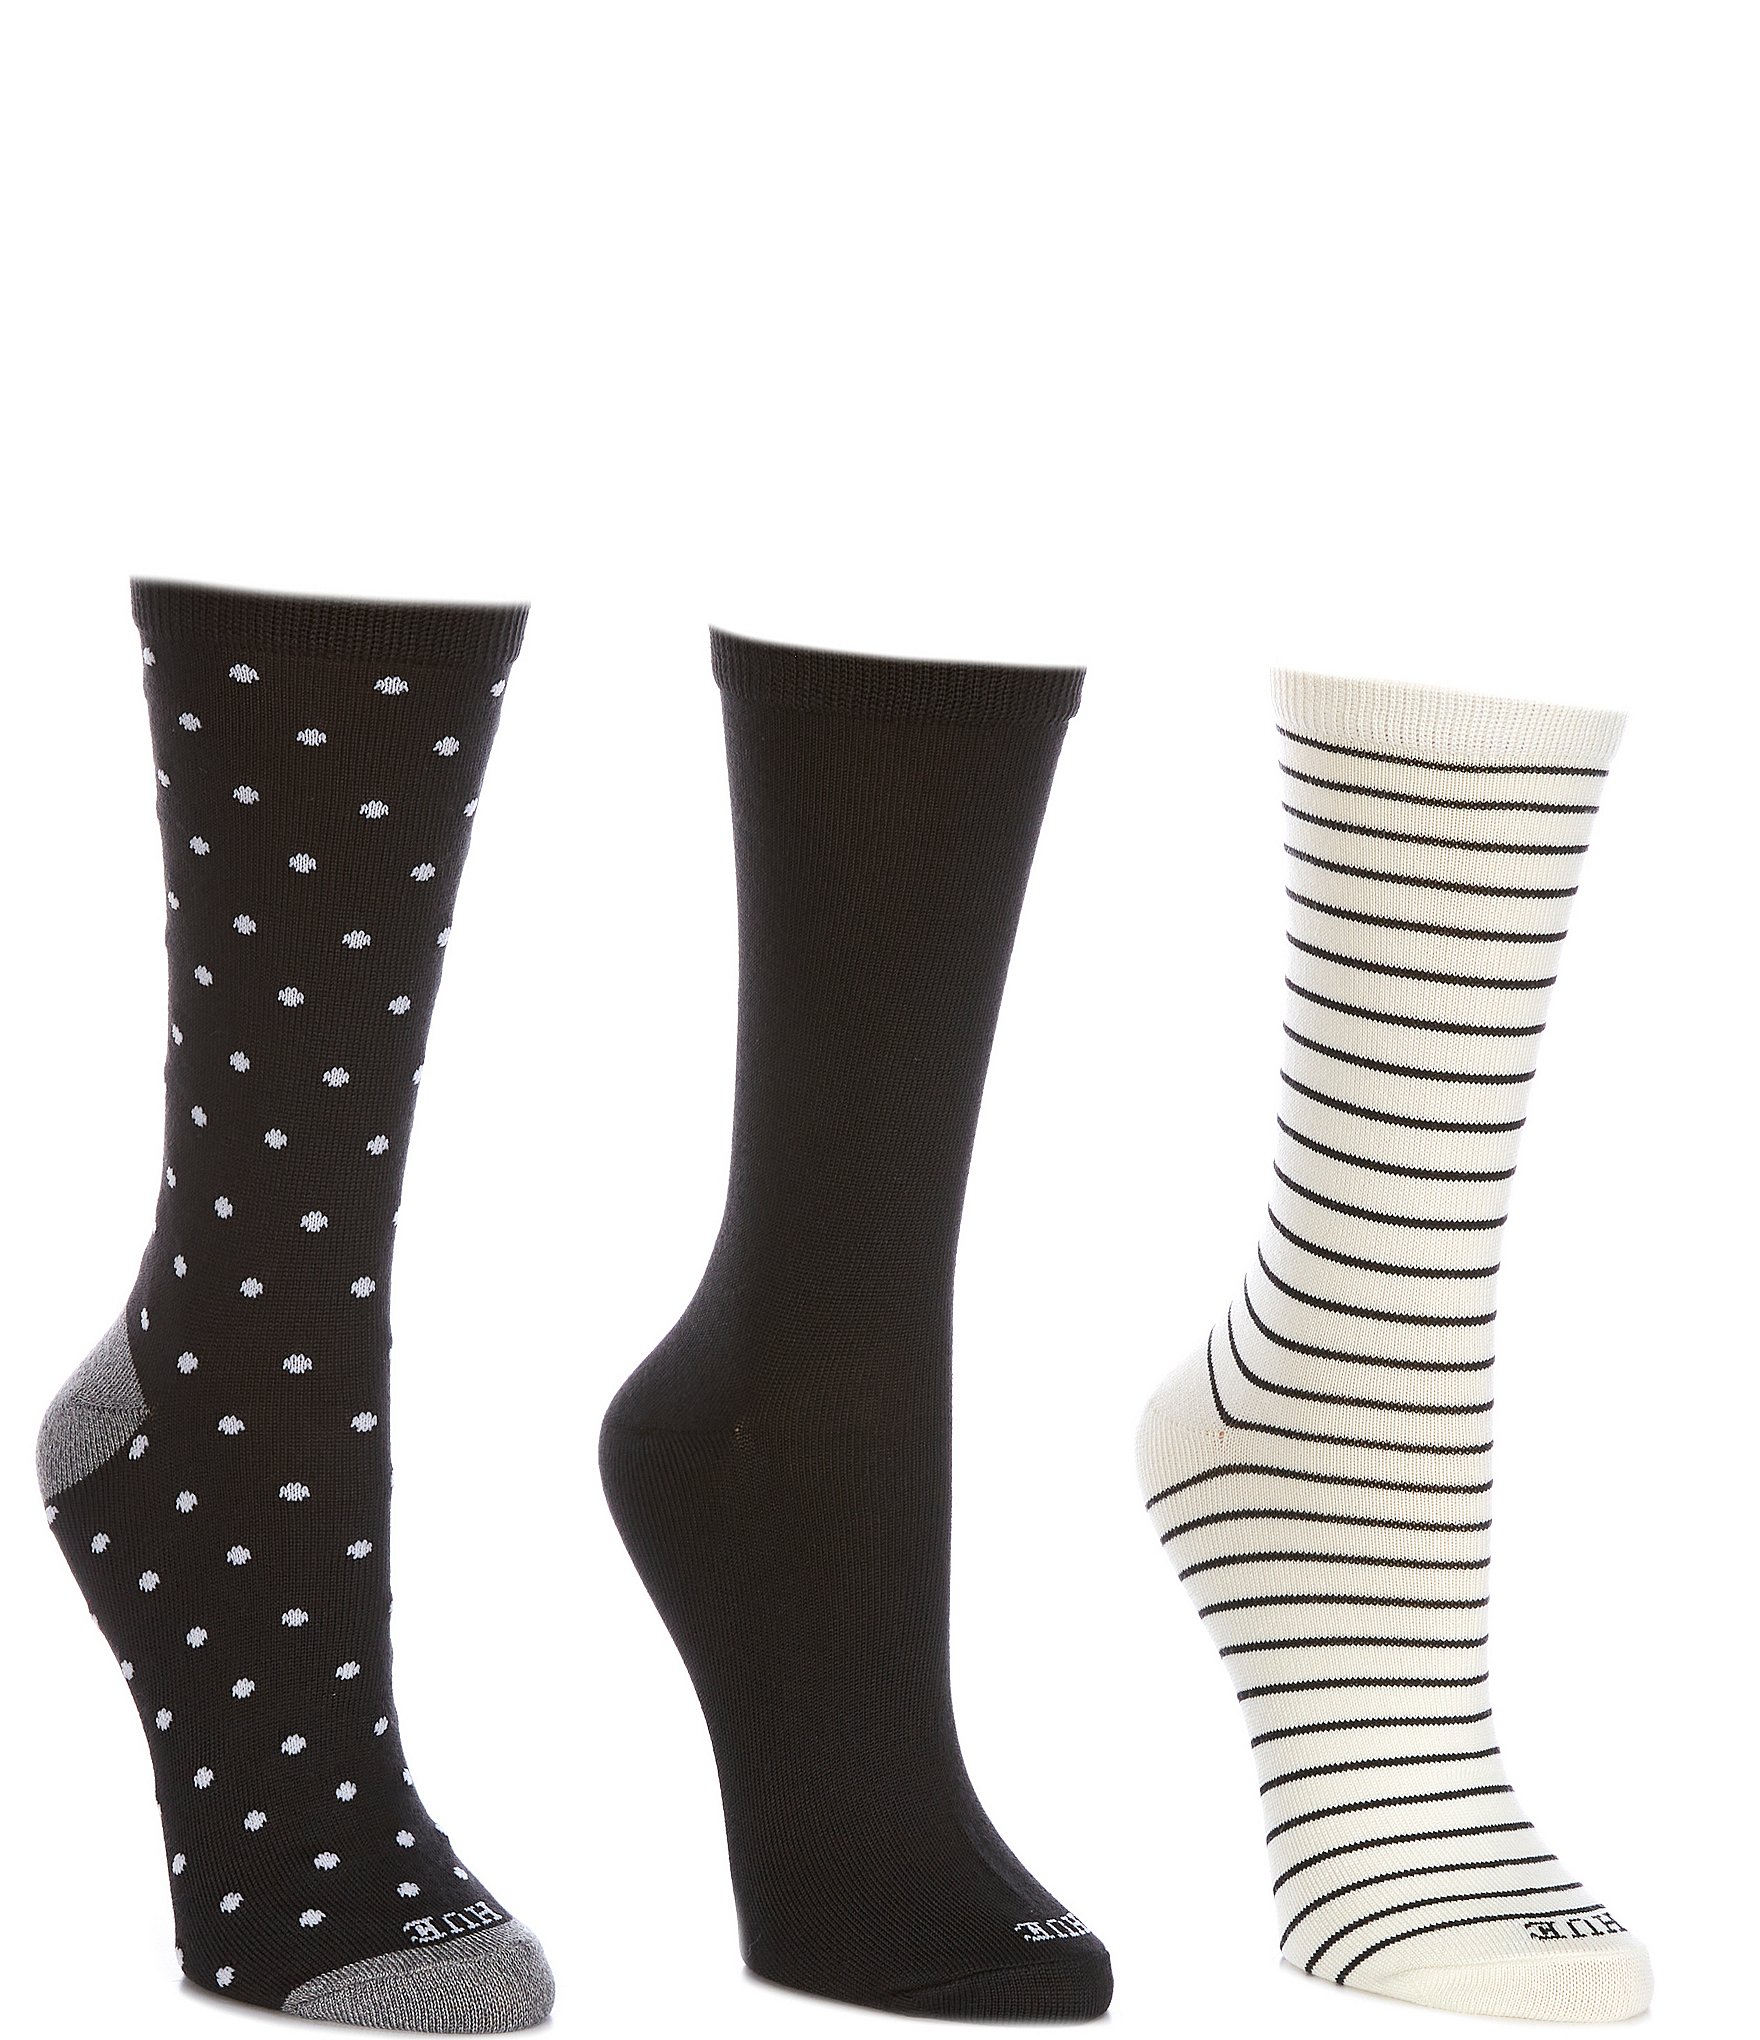 Super Stripes Knee Socks Black/White